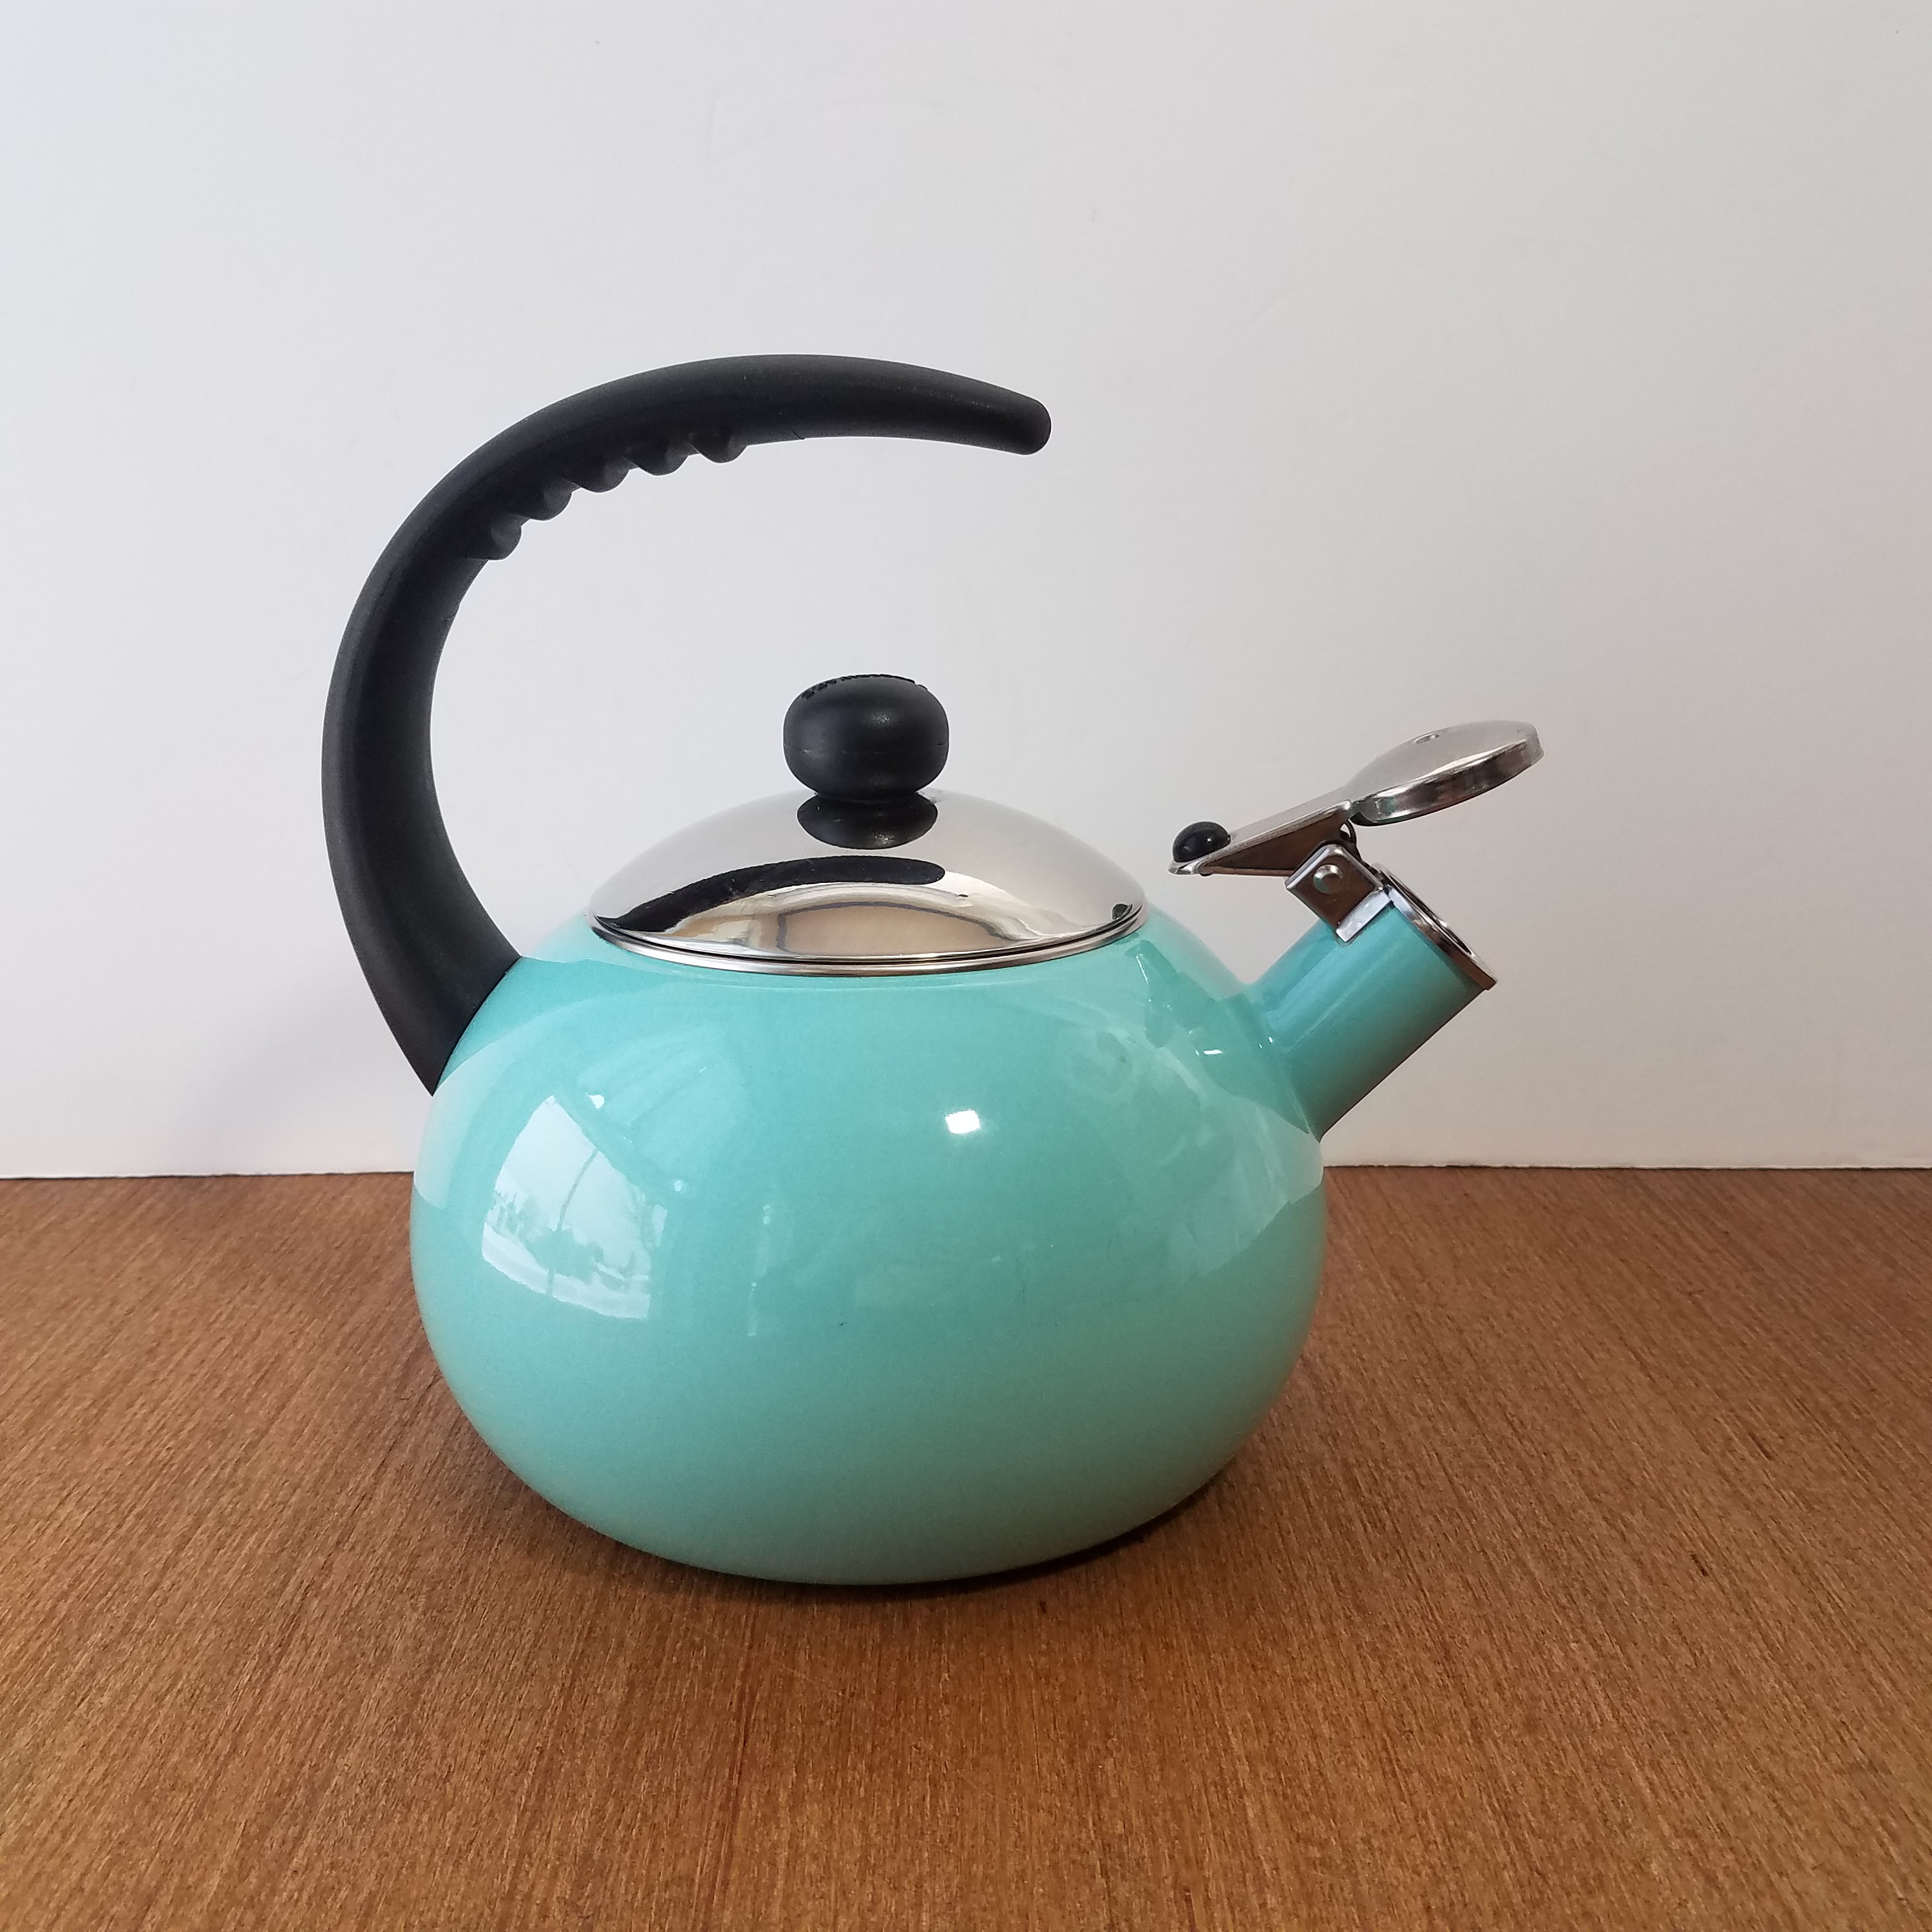 Farberware 2.3-Quart Stainless Steel Whistling Tea Kettle